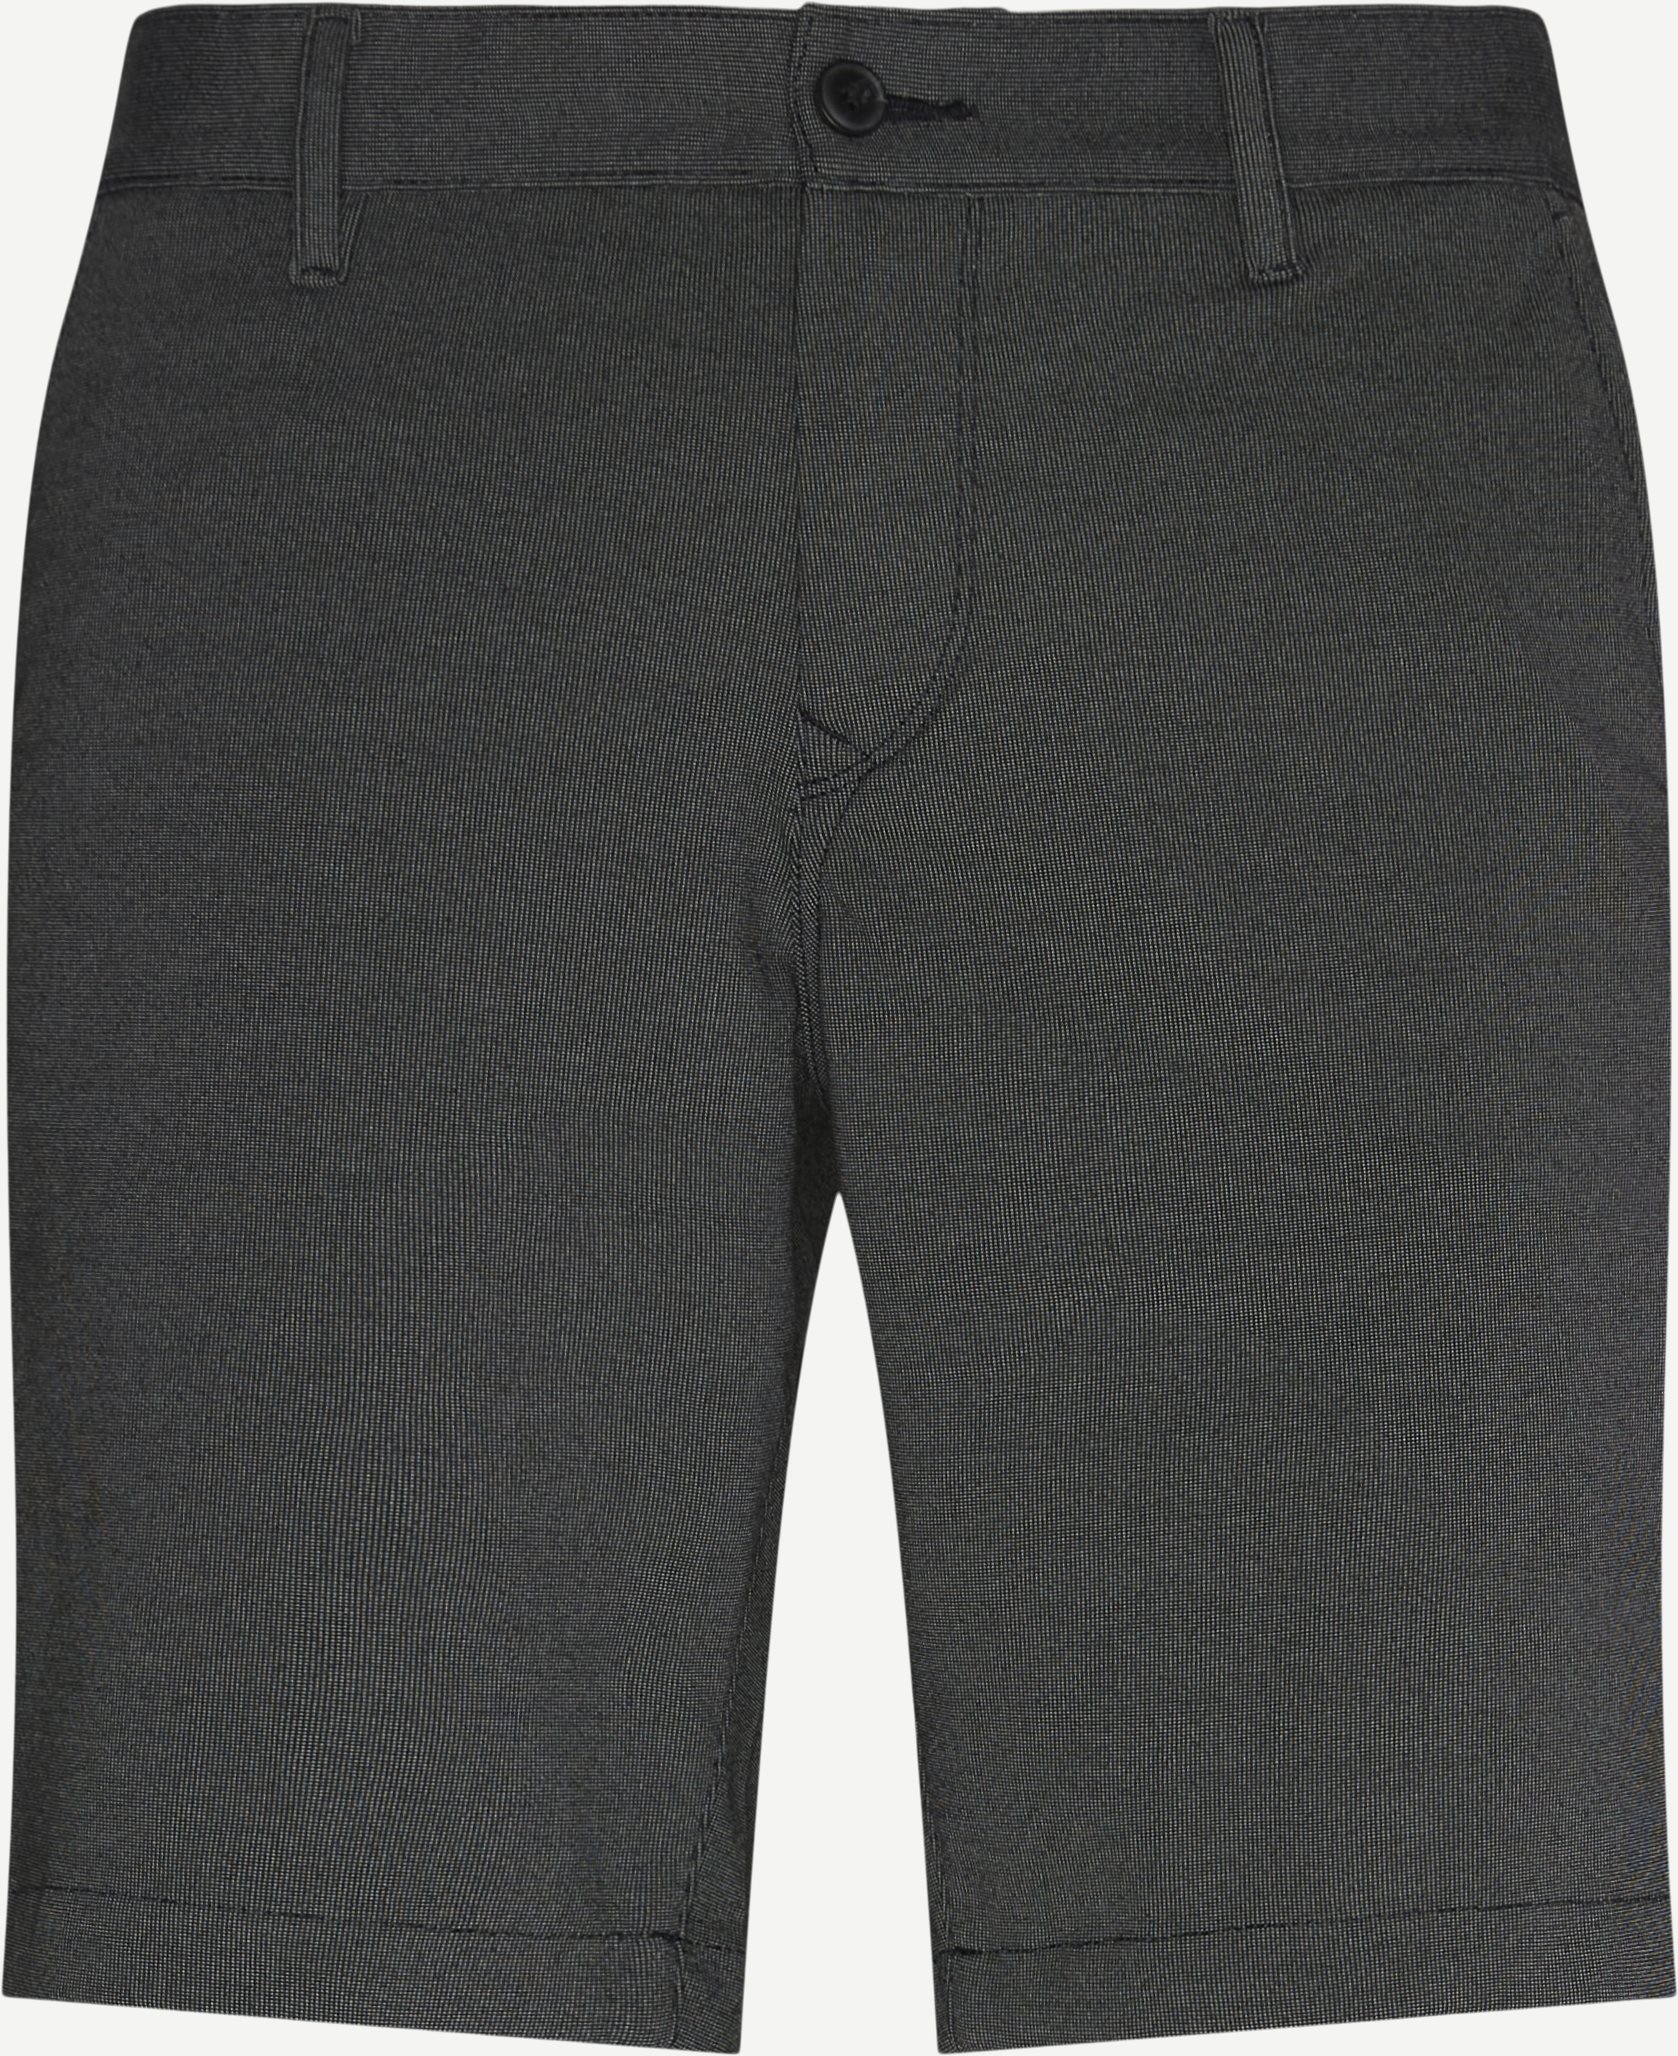 50450874 SCHINO-SLIM Shorts - Shorts - Slim fit - Black